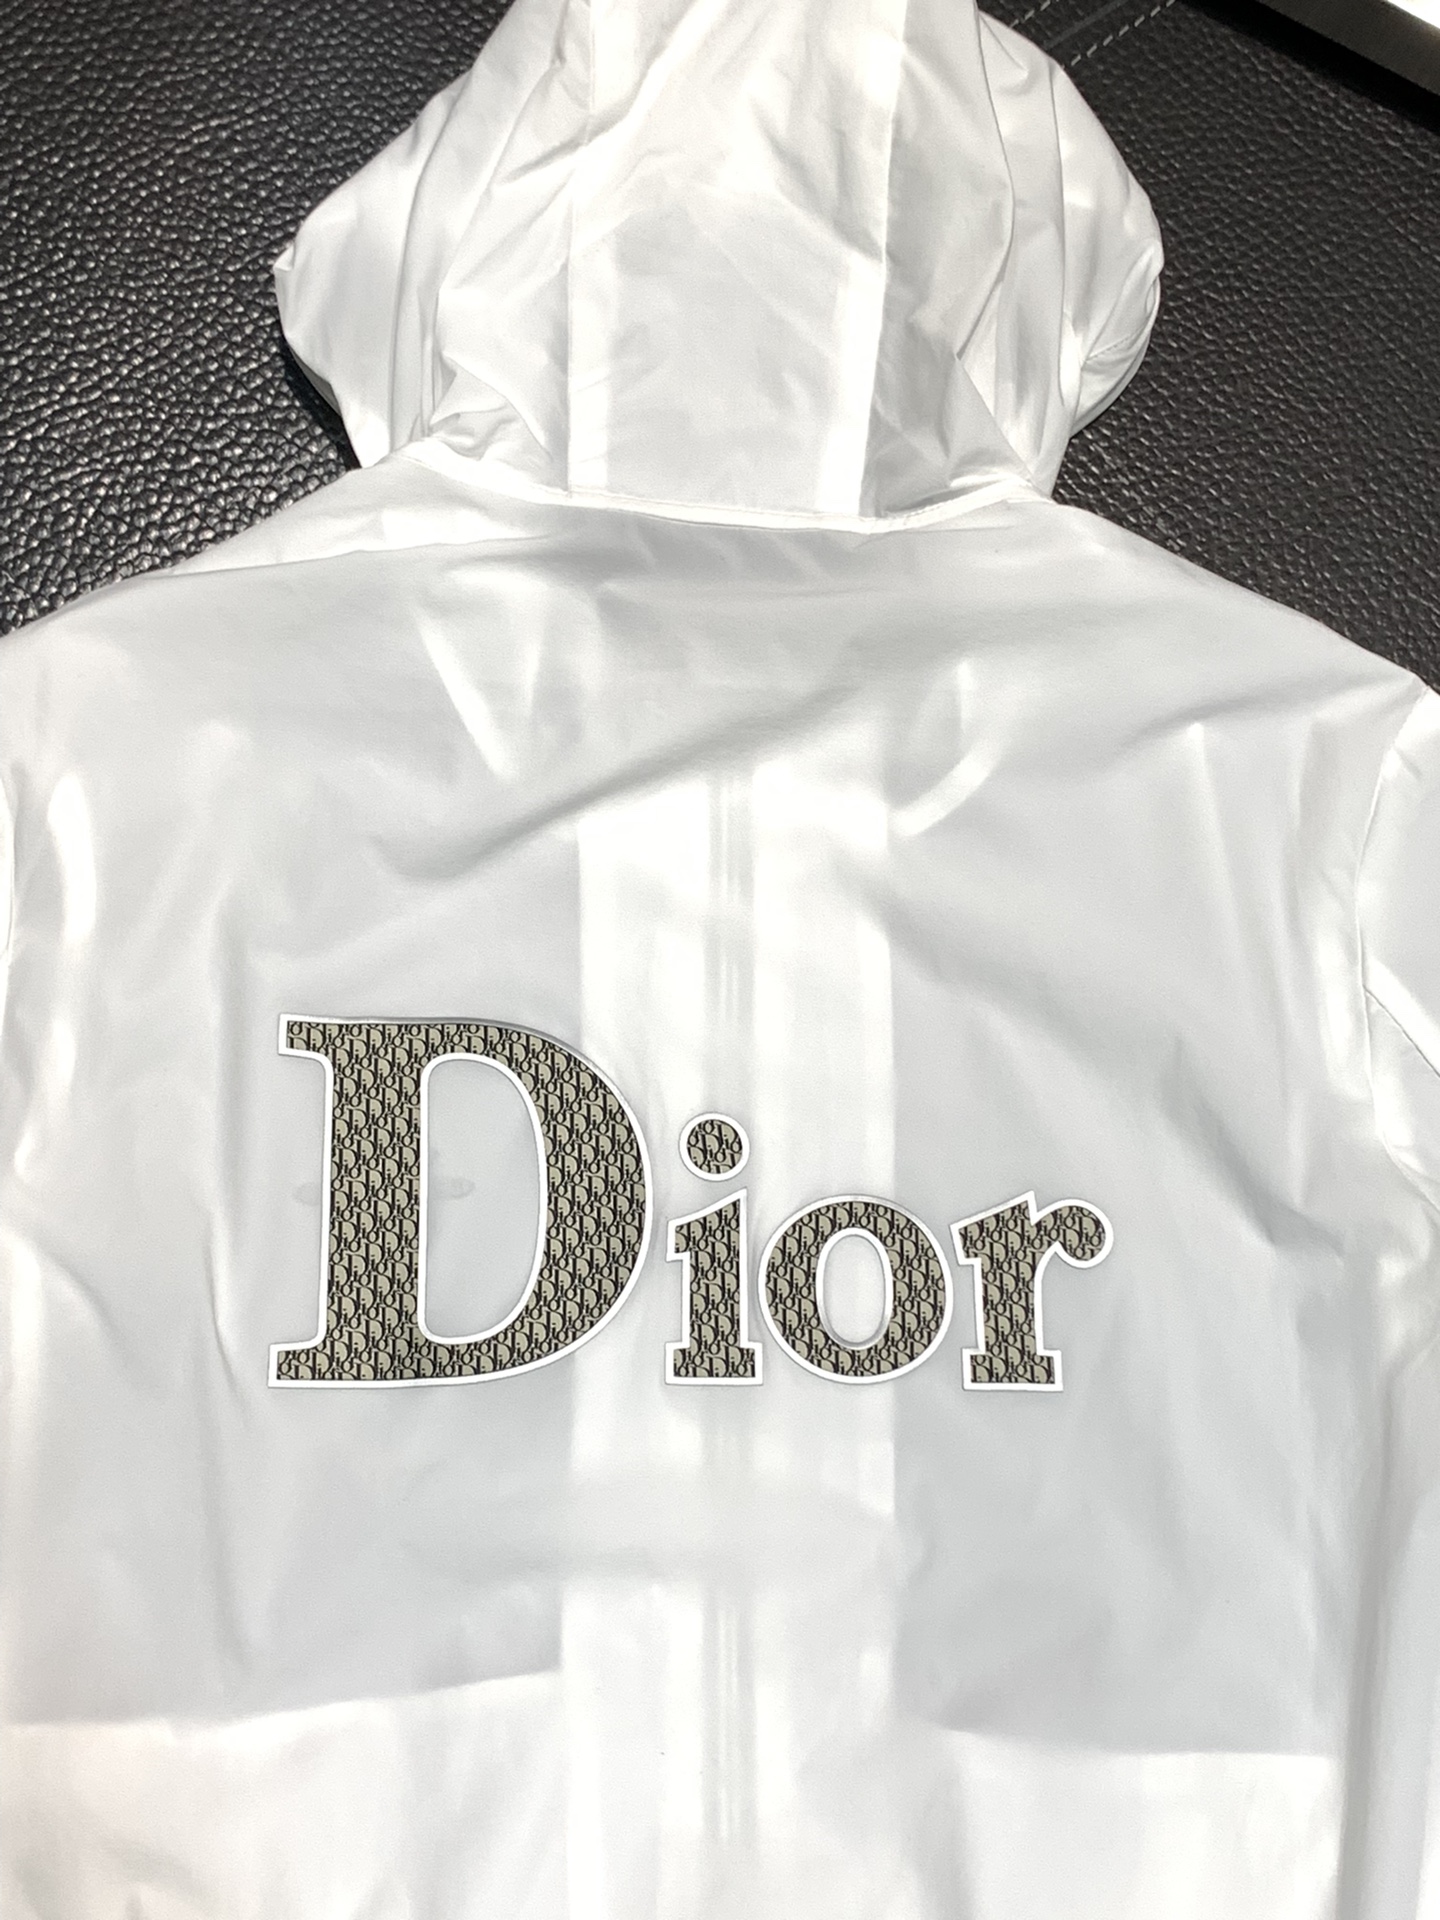 Dior迪奥独家专供最新春秋时尚连帽夹克经典设计感与颜值爆棚的外套品质更是无法挑剔品控可以直接入手不容过